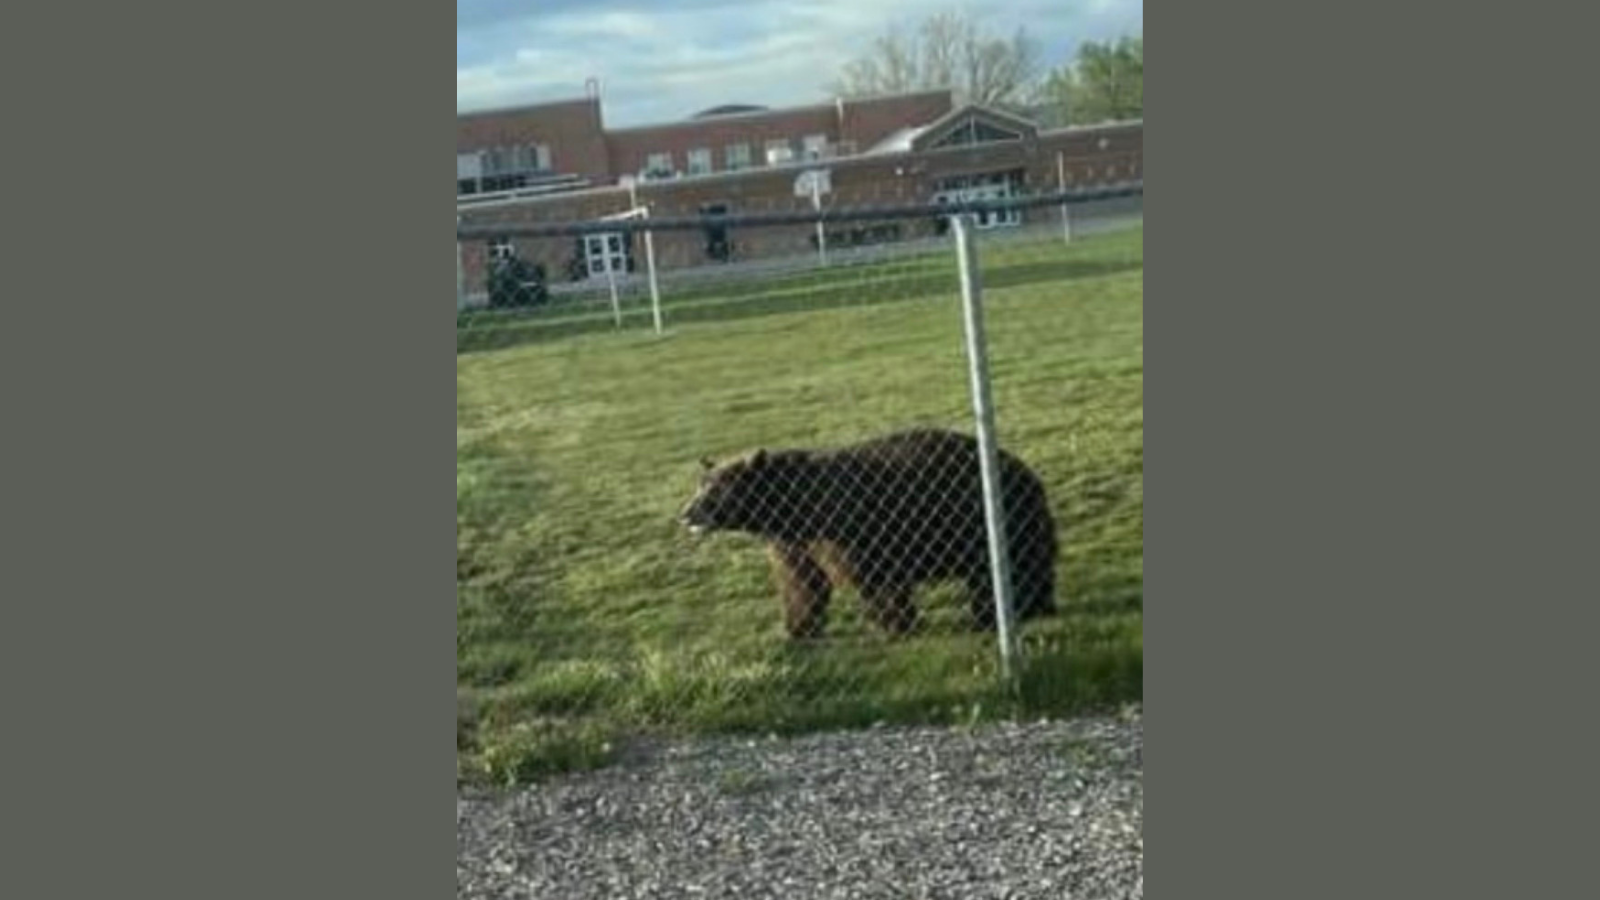 A black bear on a school field....